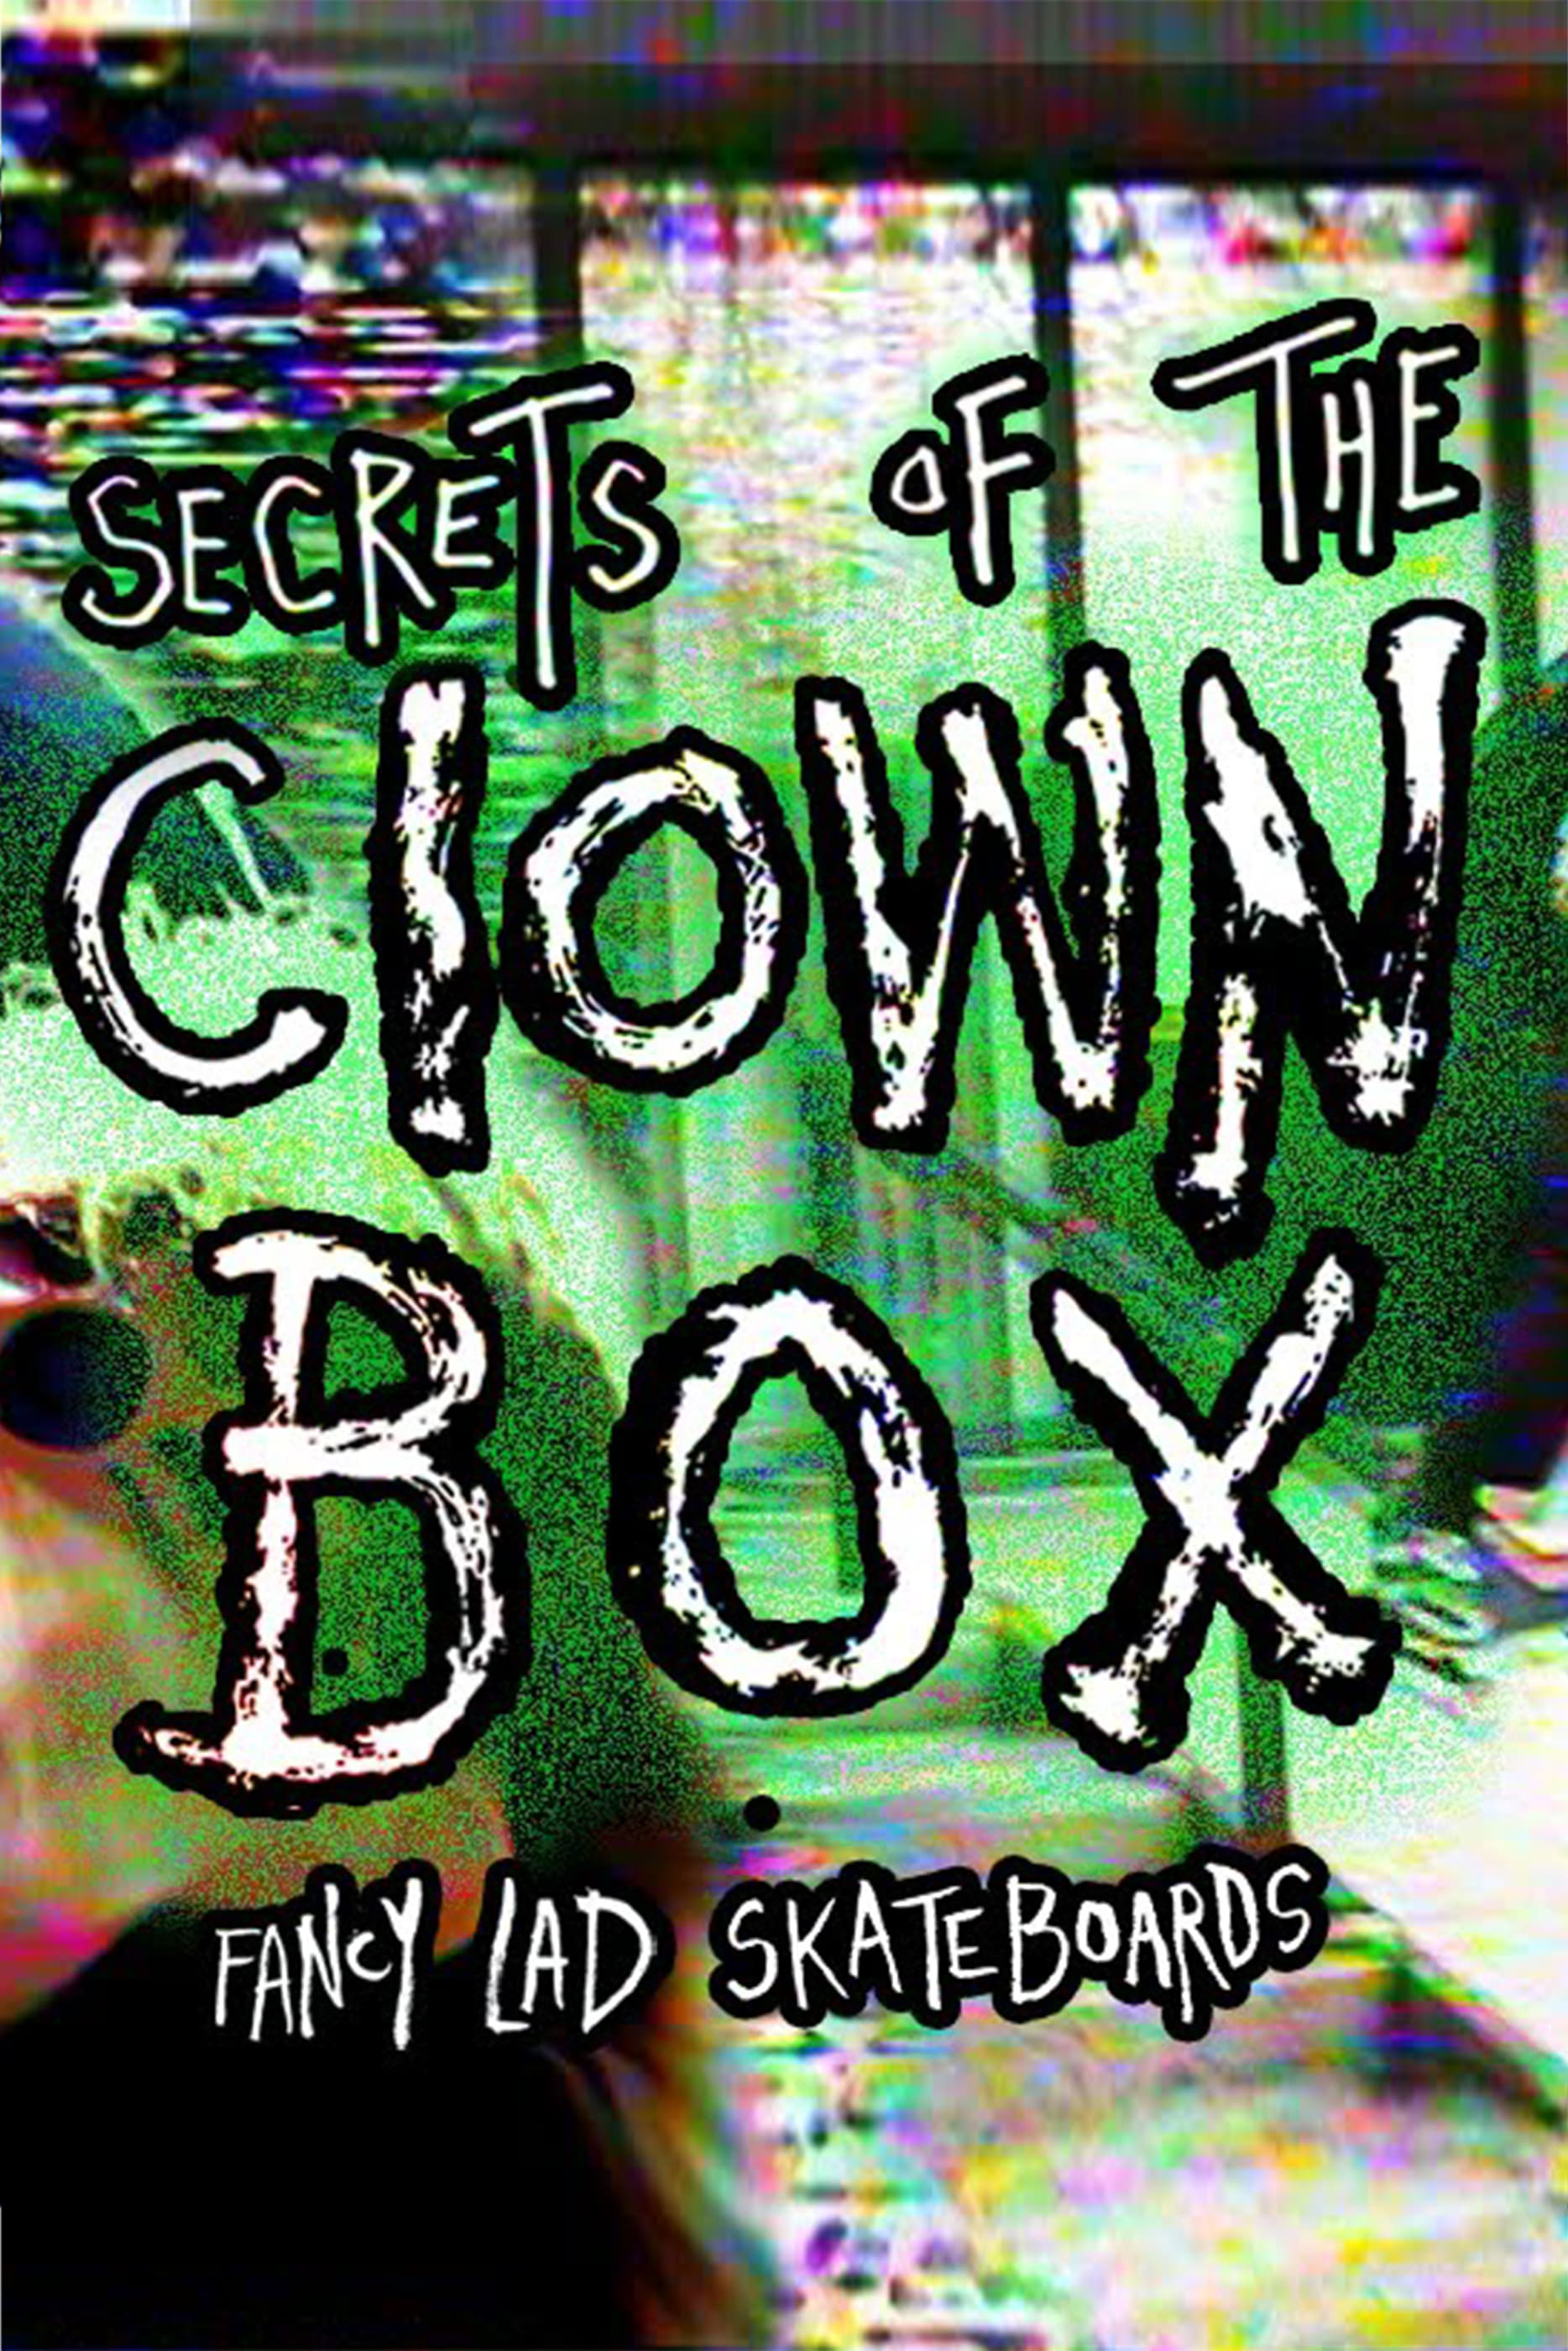 Fancy Lad's "Secrets of the Clown Box"